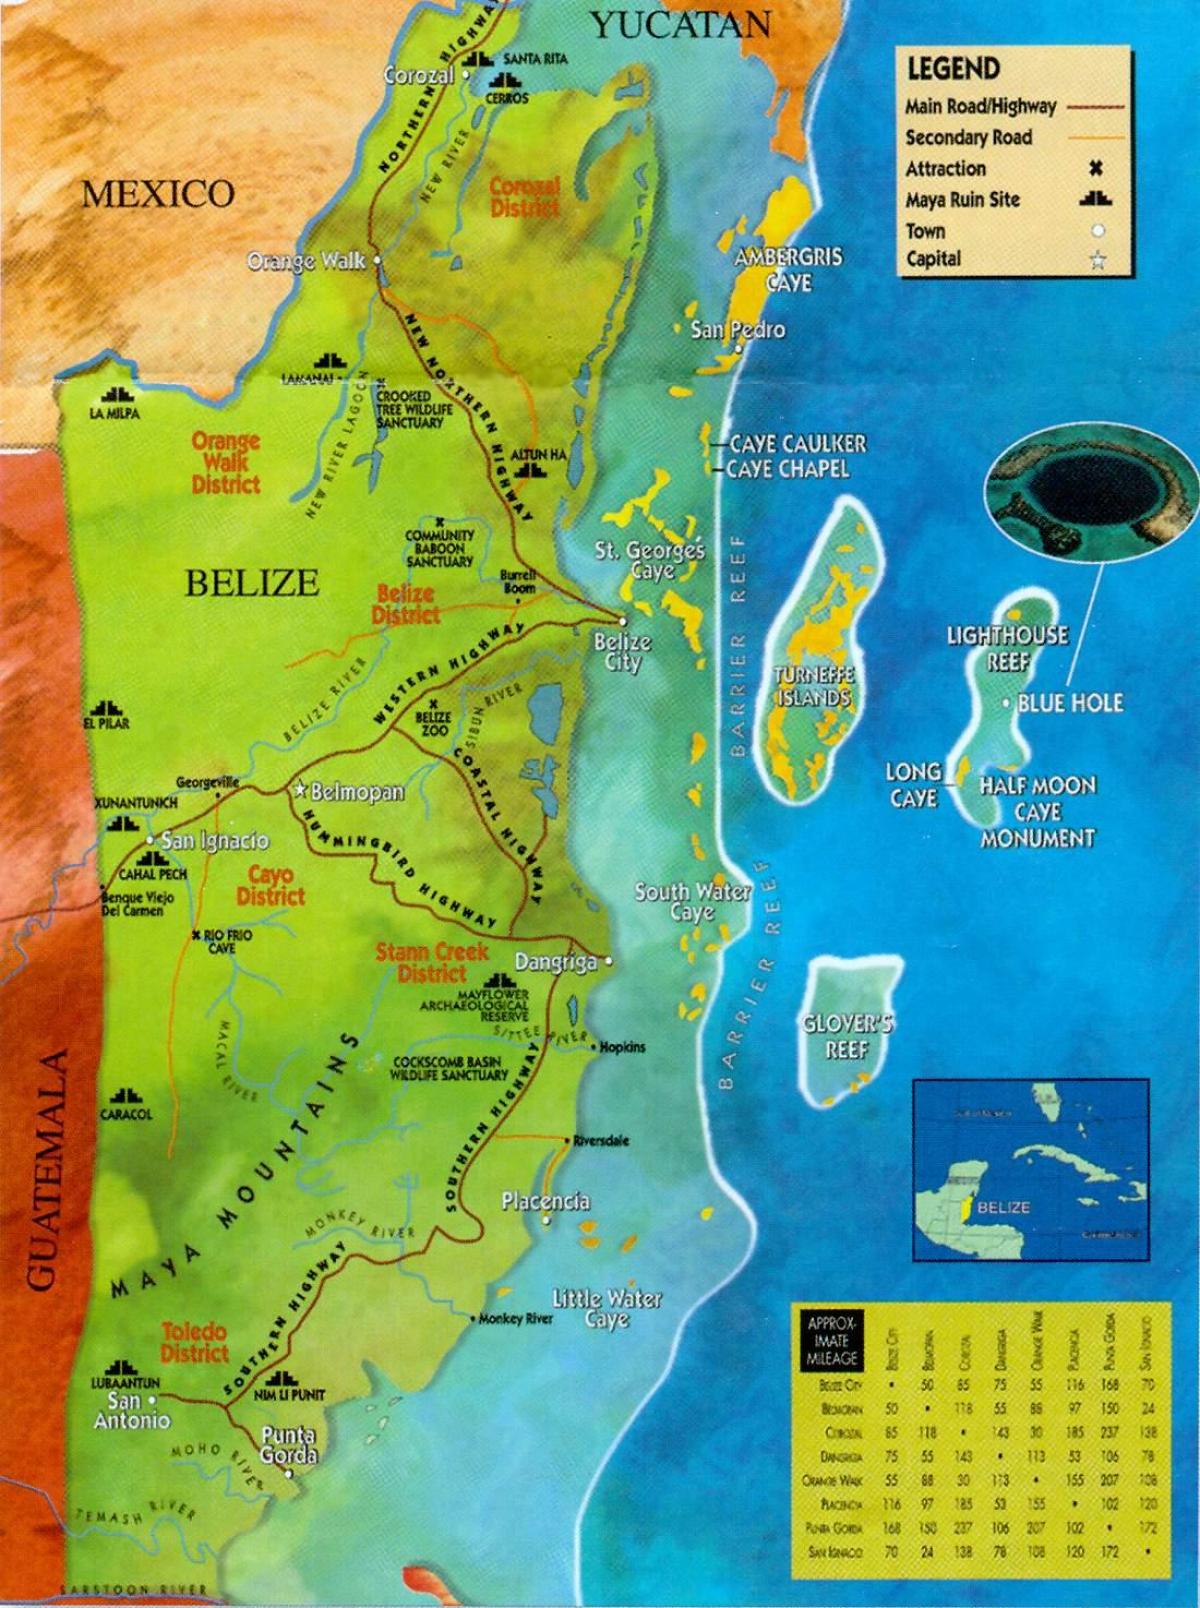 Belize ruïnes kaart